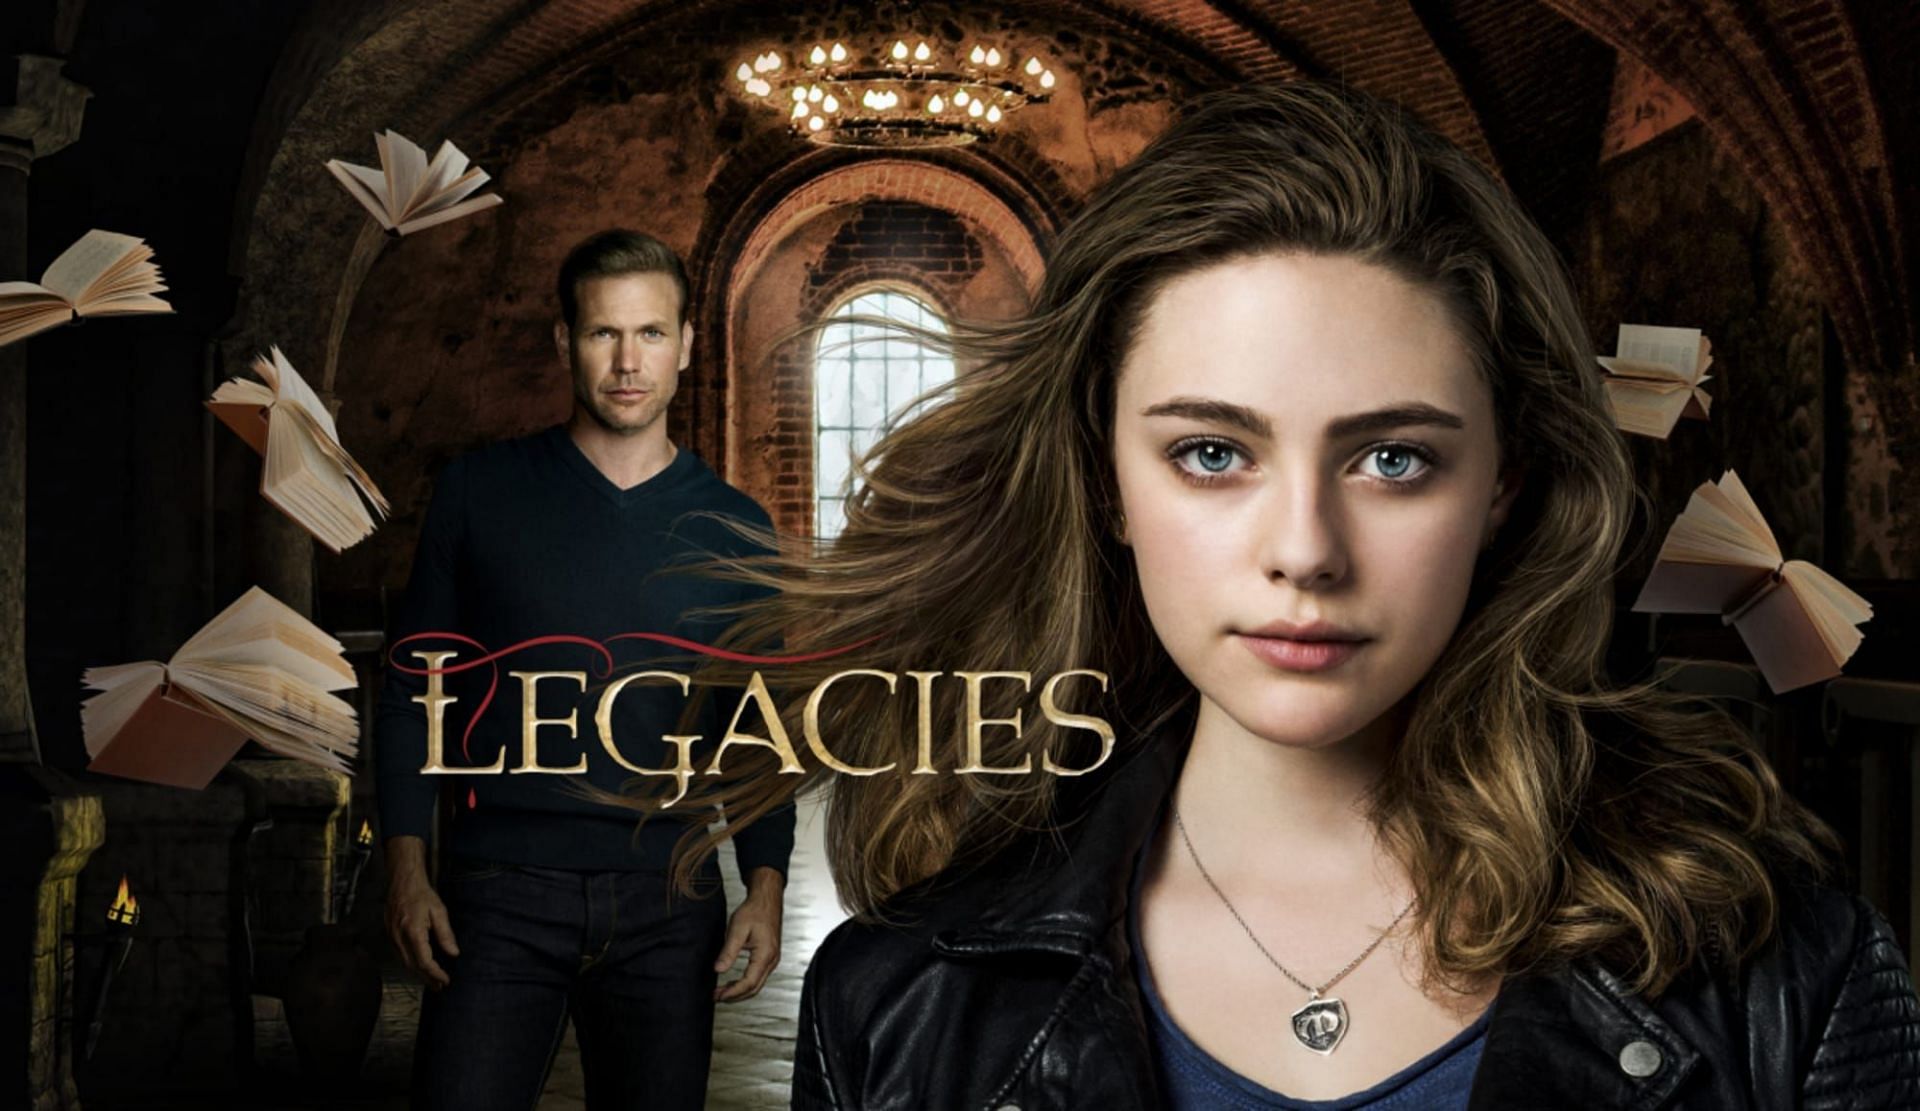 Legacies series finale airs on June 16, 2022 (Image via CW)